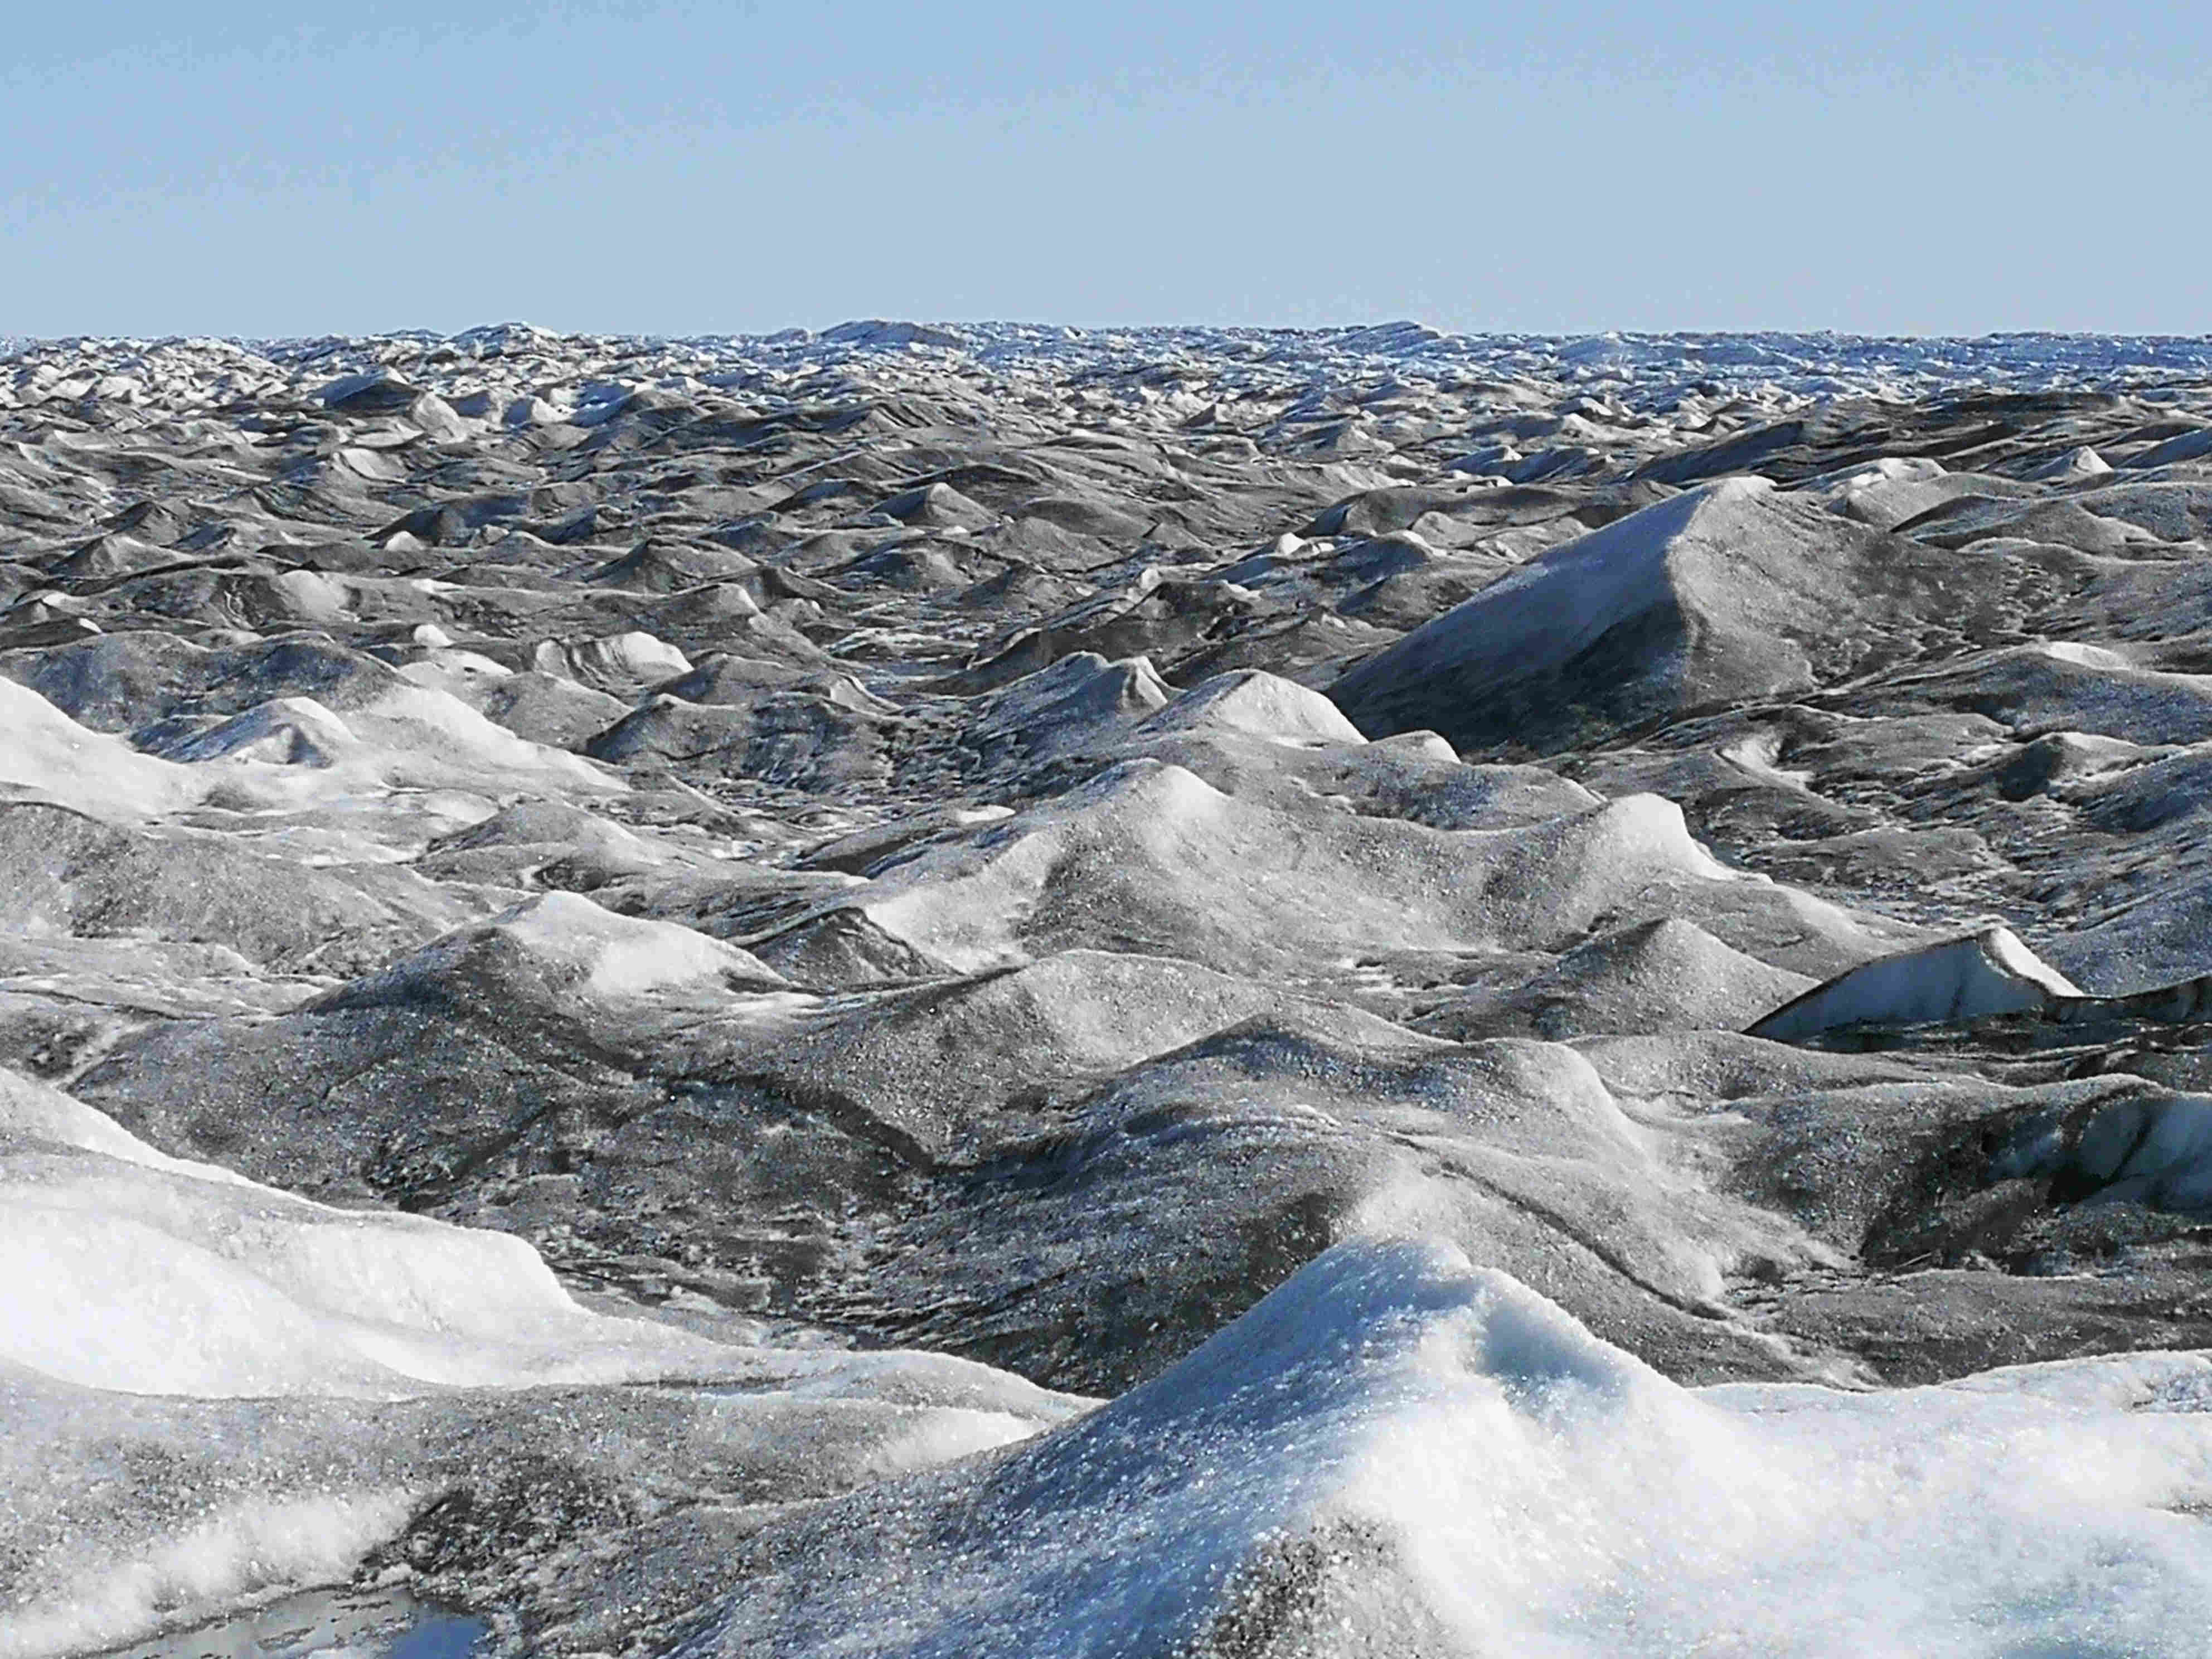 Artico Groenlandia Kangerlussuaq Calotta glaciale foto durante viaggio in piccolo gruppo opinioni ottime